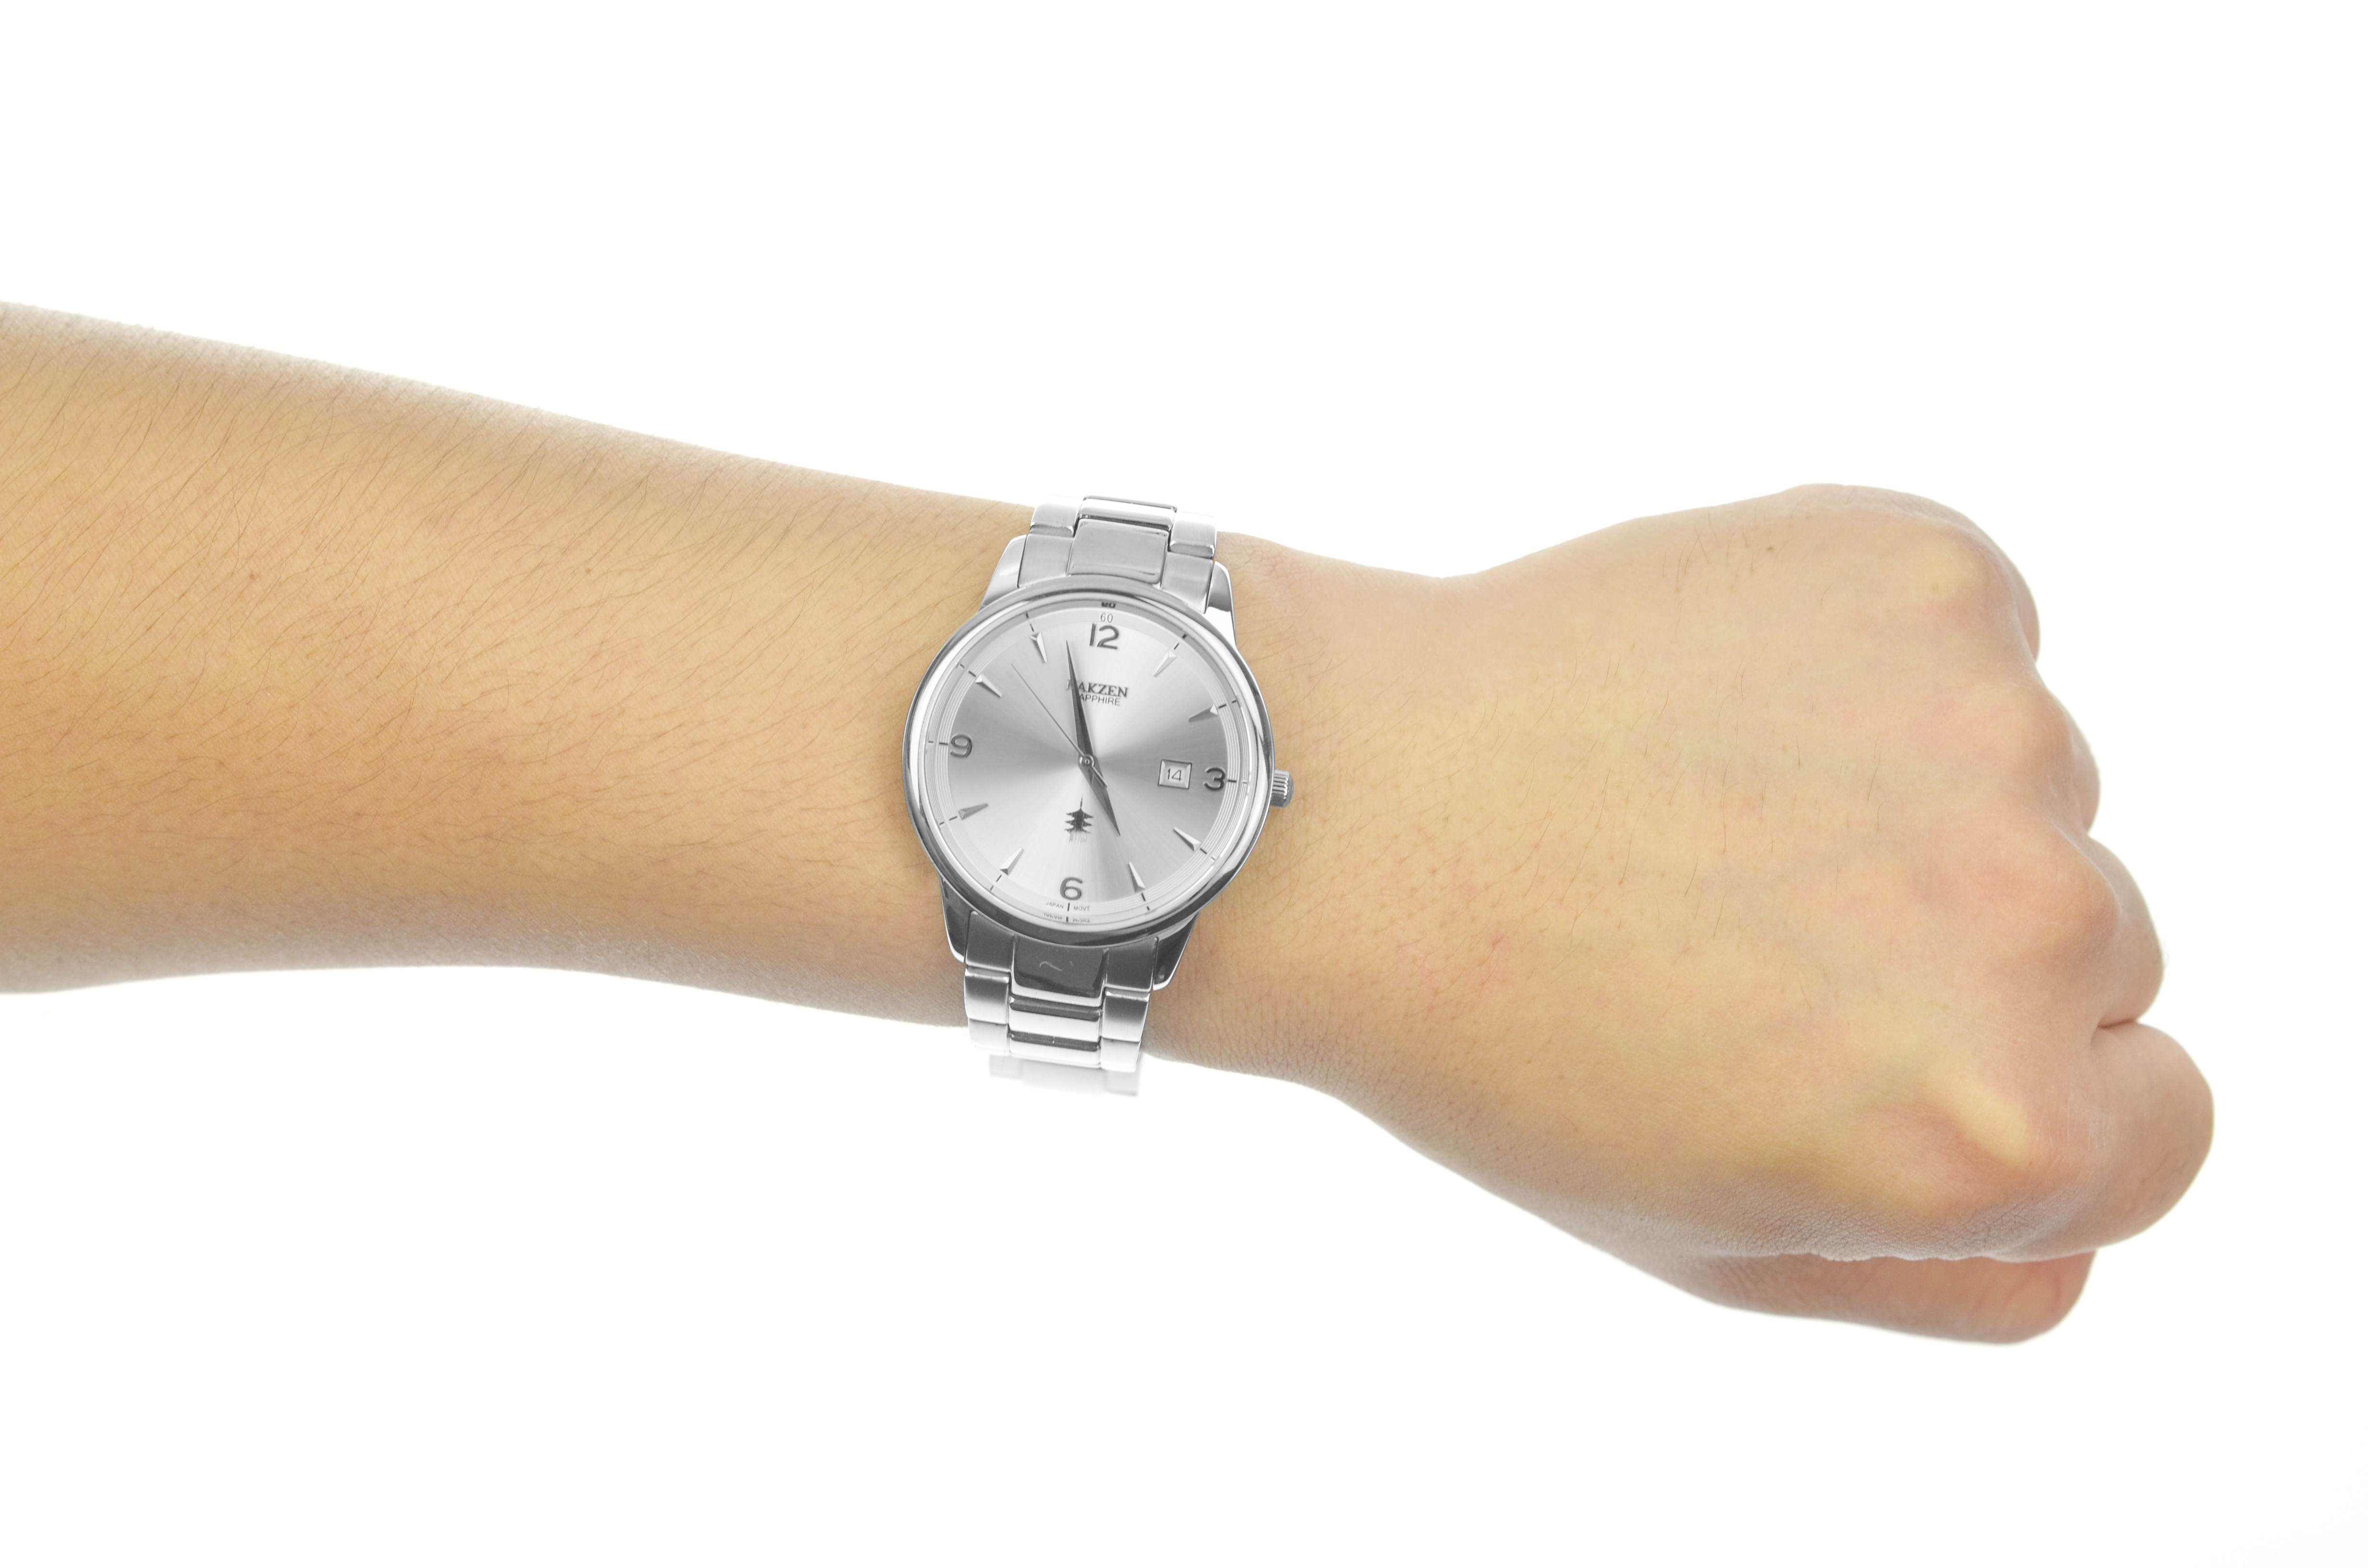  NAKZEN メンズ腕時計日本クォーツミニマリストステンレススチールスリム腕時計ブラックダイヤル3トーンSS1006G-7  